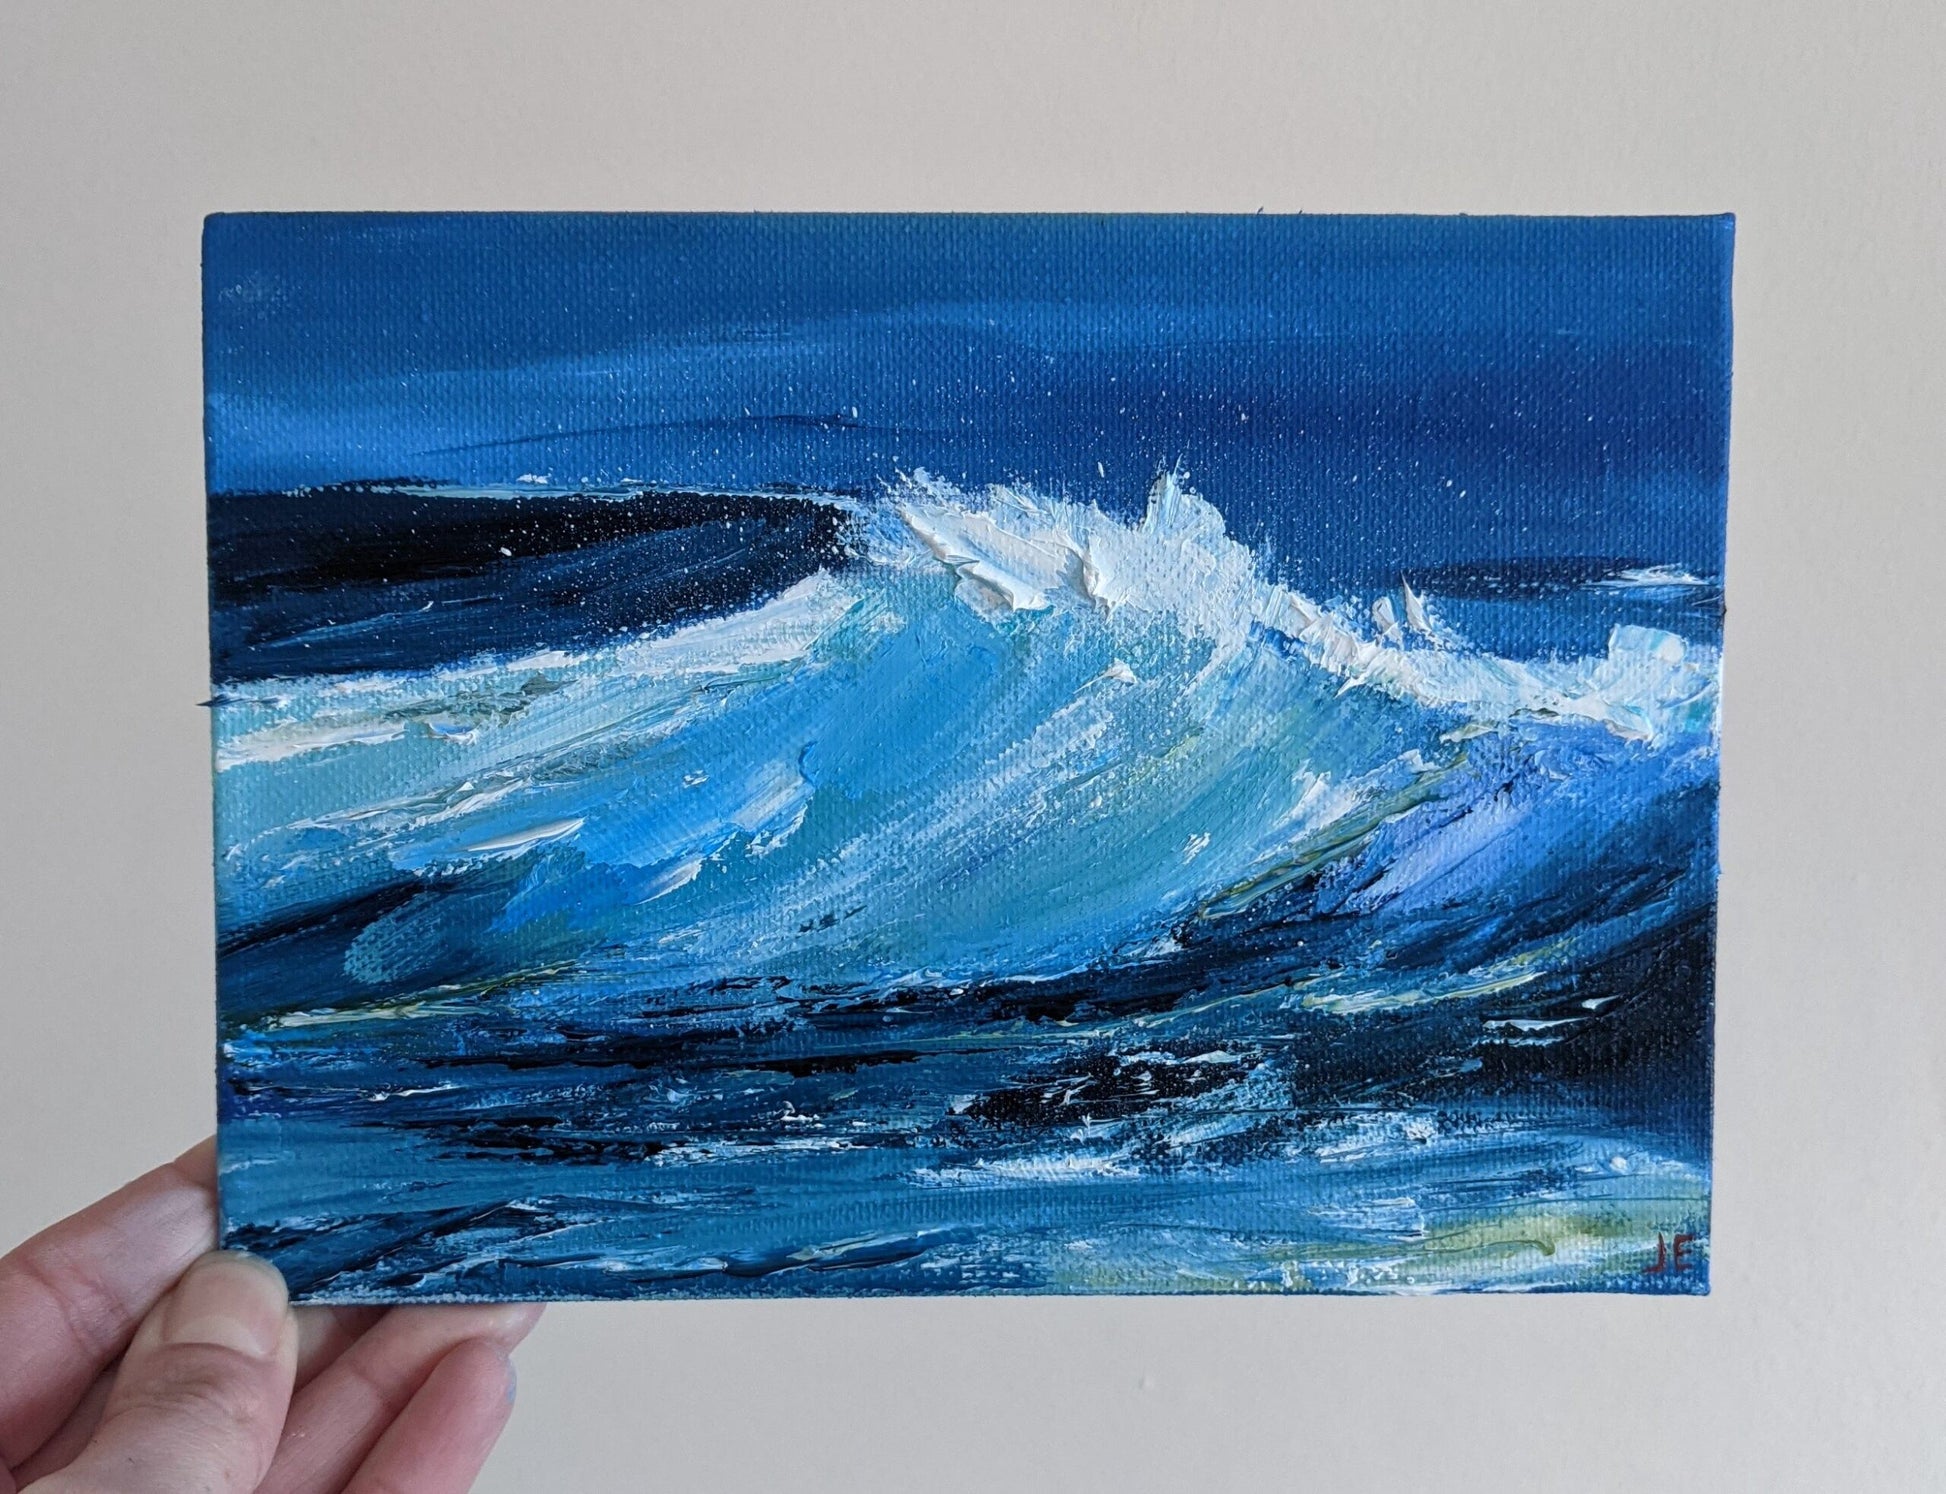 Miniature Wave Seascape #8 oil painting on canvas board in studio, by Jo Earl